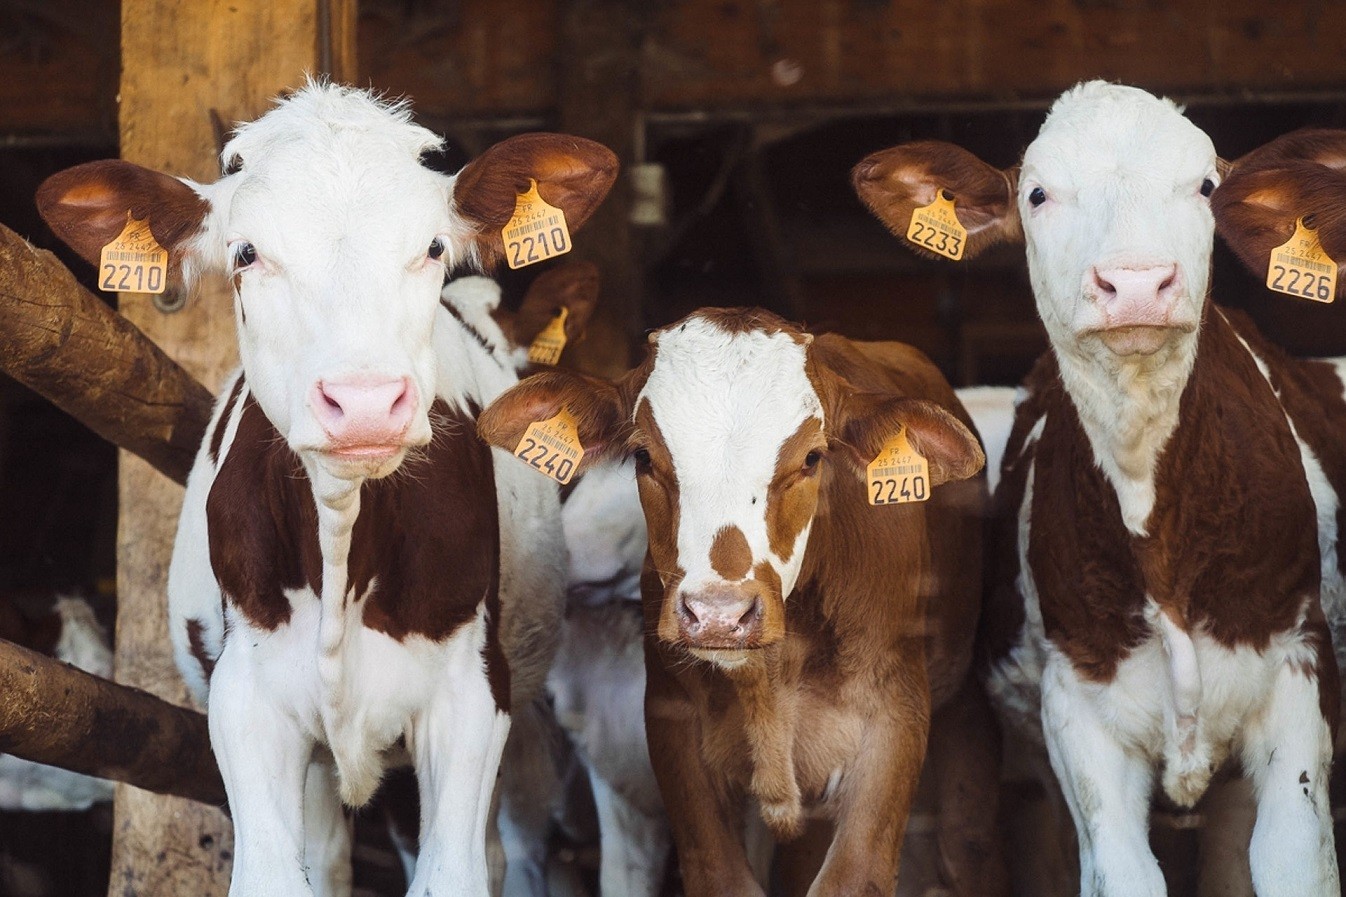 Οι αγελάδες χρειάζονται τουλάχιστον 9 τ.μ. αποφαίνεται η Ευρωπαϊκή Αρχή για την Ασφάλεια των τροφίμων